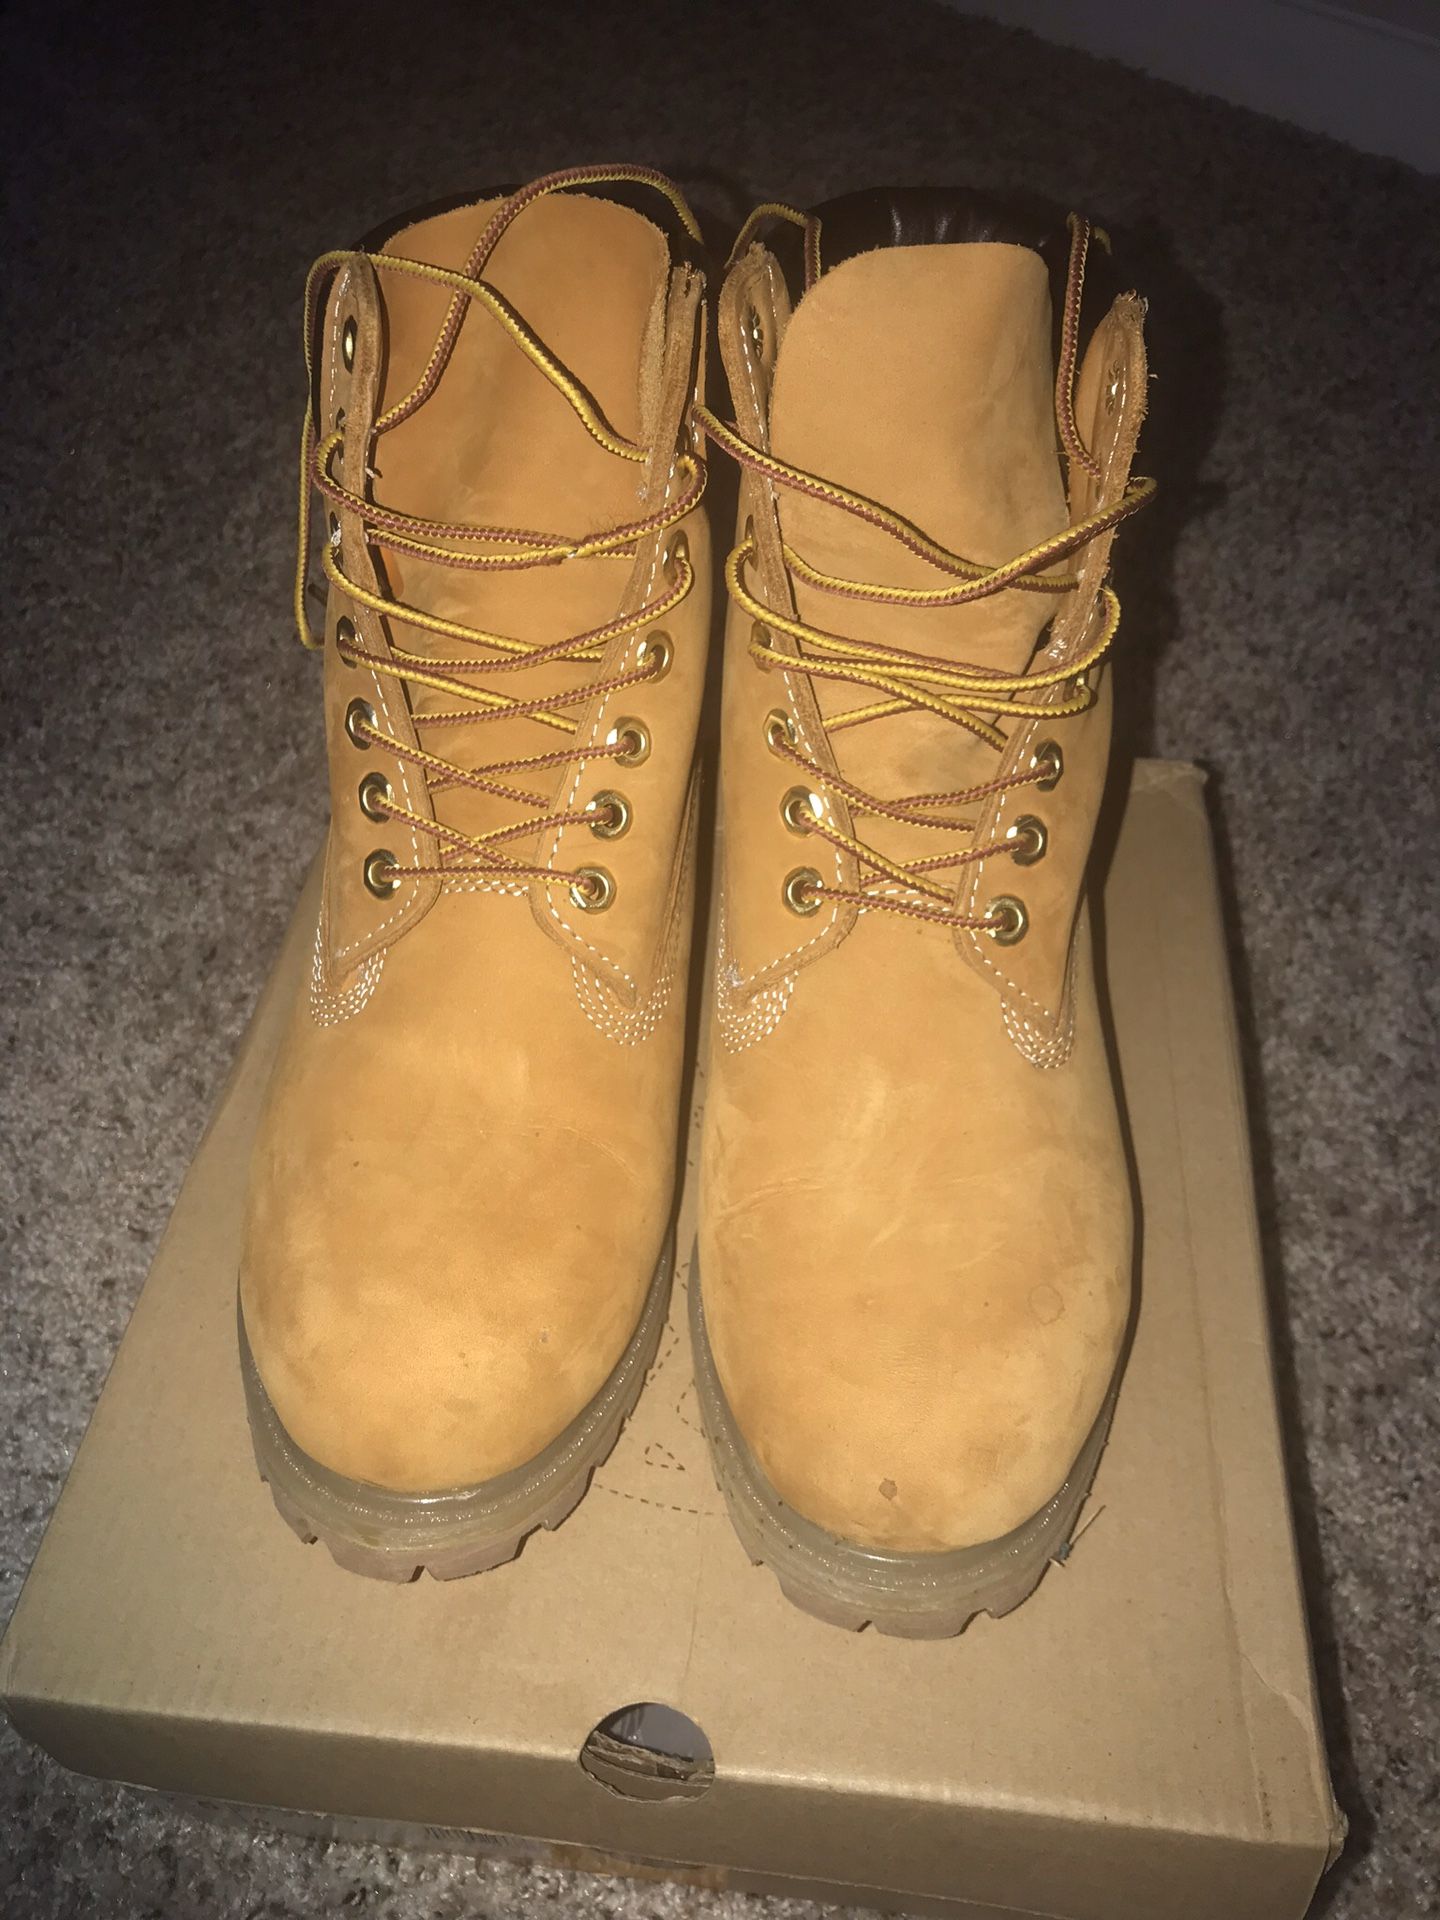 Men Timberland Boots-Wheat 7.5 MEN/9.5 WOMEN